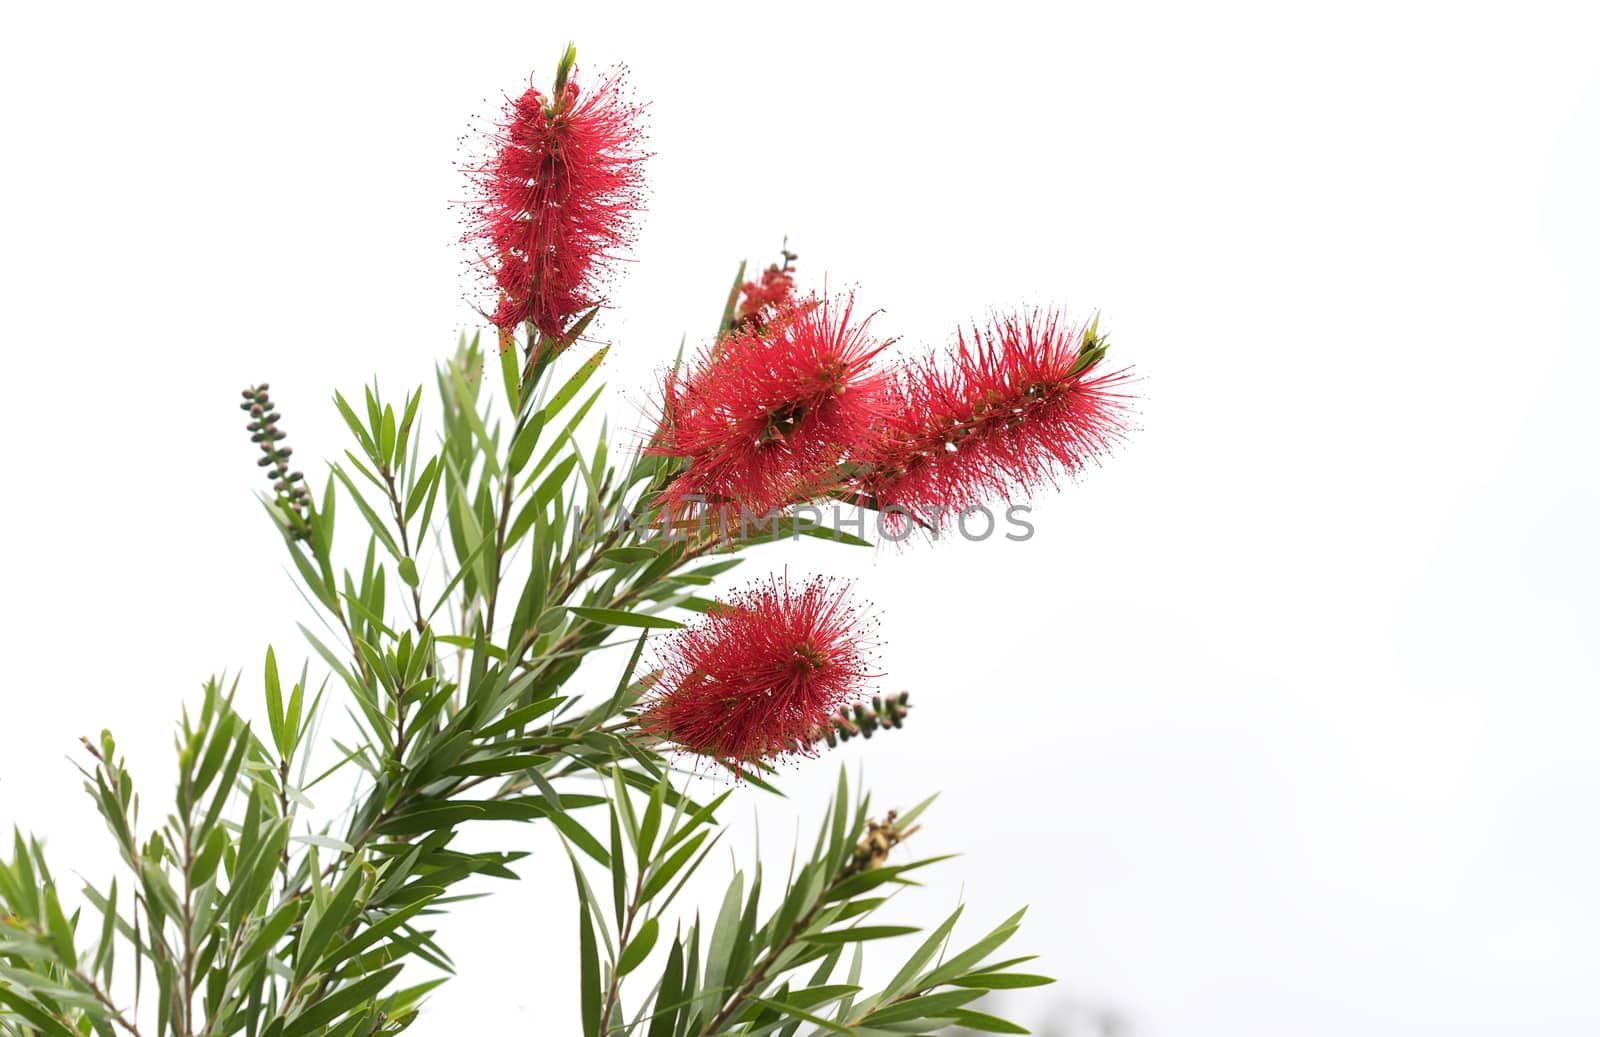 Australian Bottlebrush Callistemon Flowers by sherj